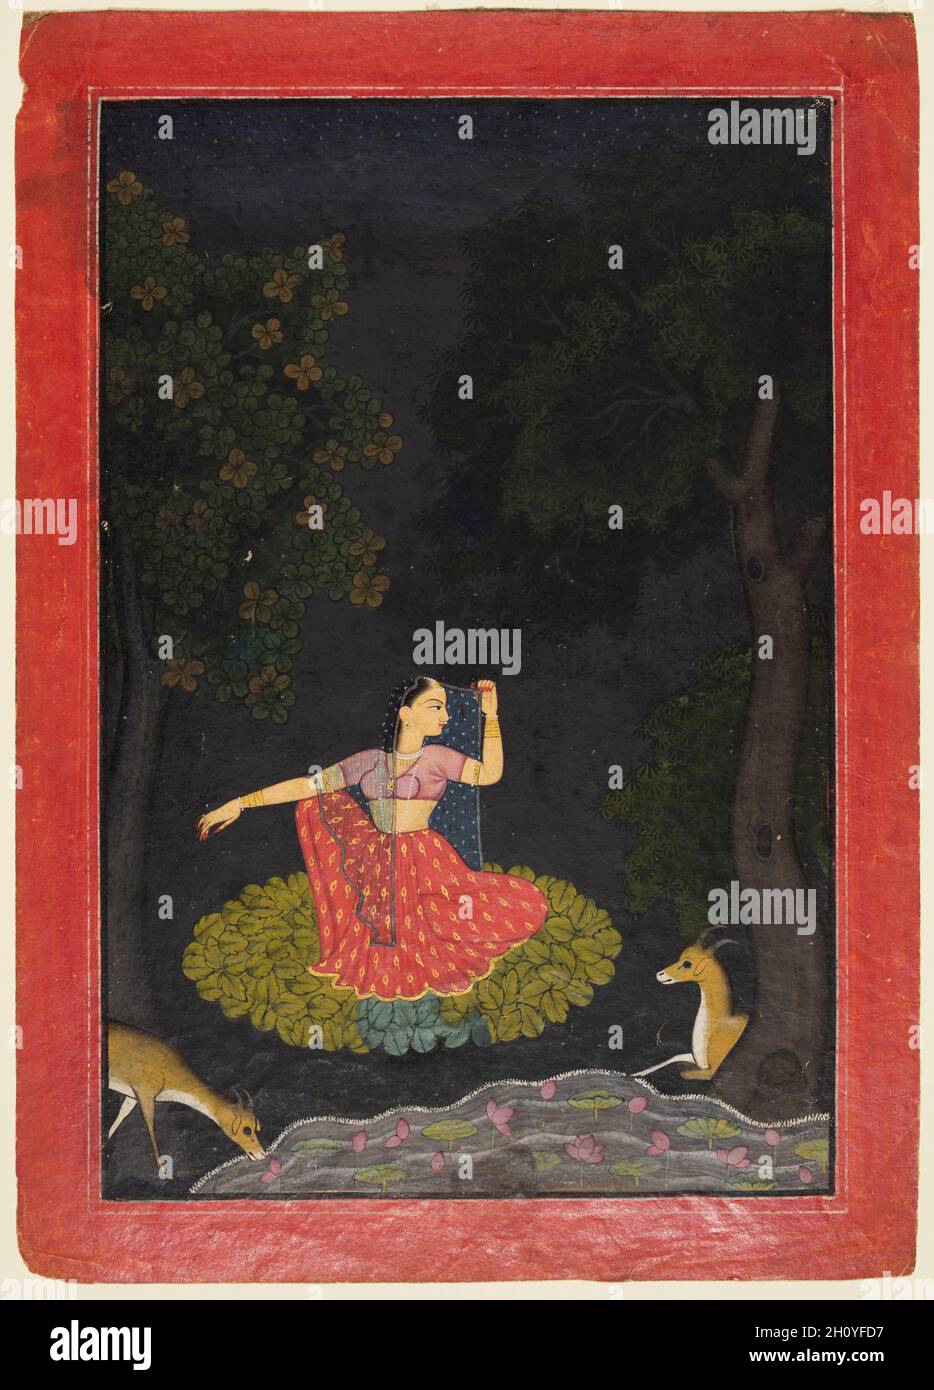 Une héroïne en attente de son paramure: Vasakasajja Nayika, d'un Nurpur Rasikapriya, c.1750. Nord de l'Inde, Himachal Pradesh, Pahari Royaume de Nurpur.Gomme tempera et or sur papier; page: 28.4 x 20.2 cm (11 3/16 x 7 15/16 po.); image: 24.4 x 16.7 cm (9 5/8 x 6 9/16 po.).Vasakasajja a été décrit comme Nayika qui arrange le lit pour faire l'amour.Elle est assise sur un lit de feuilles près d'un étang, attendant anxieusement son amant.Le peintre a fidèlement suivi la description de la scène du poète et a représenté le Nayika, à la conformation équitable, qui rayonnait contre l’illumi, un environnement sombre Banque D'Images